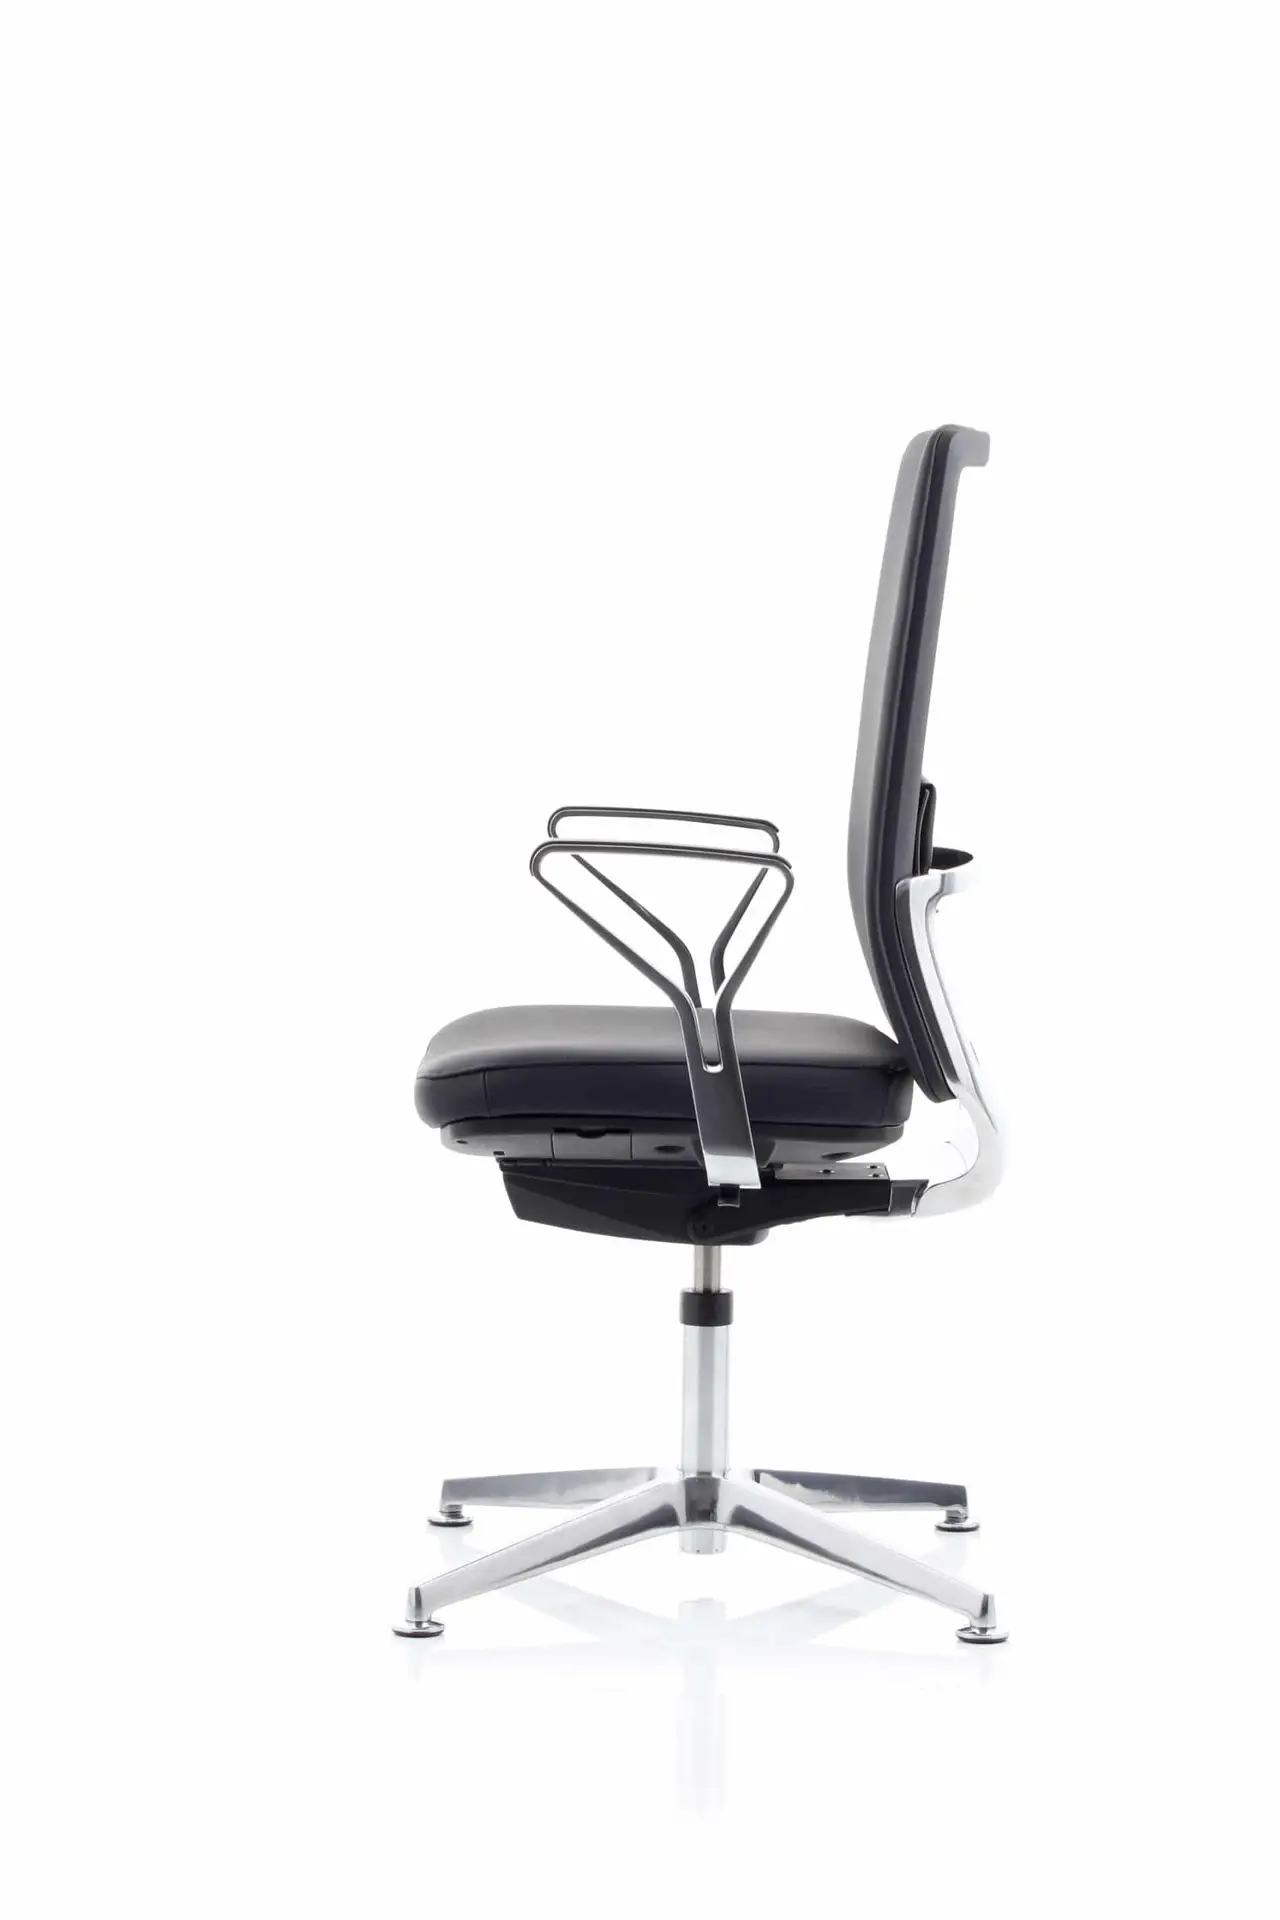 Anteo ALU MØDESTOL i læder, en ergonomisk og flot mødestol. Kan vippe og dreje, god til de lange møder